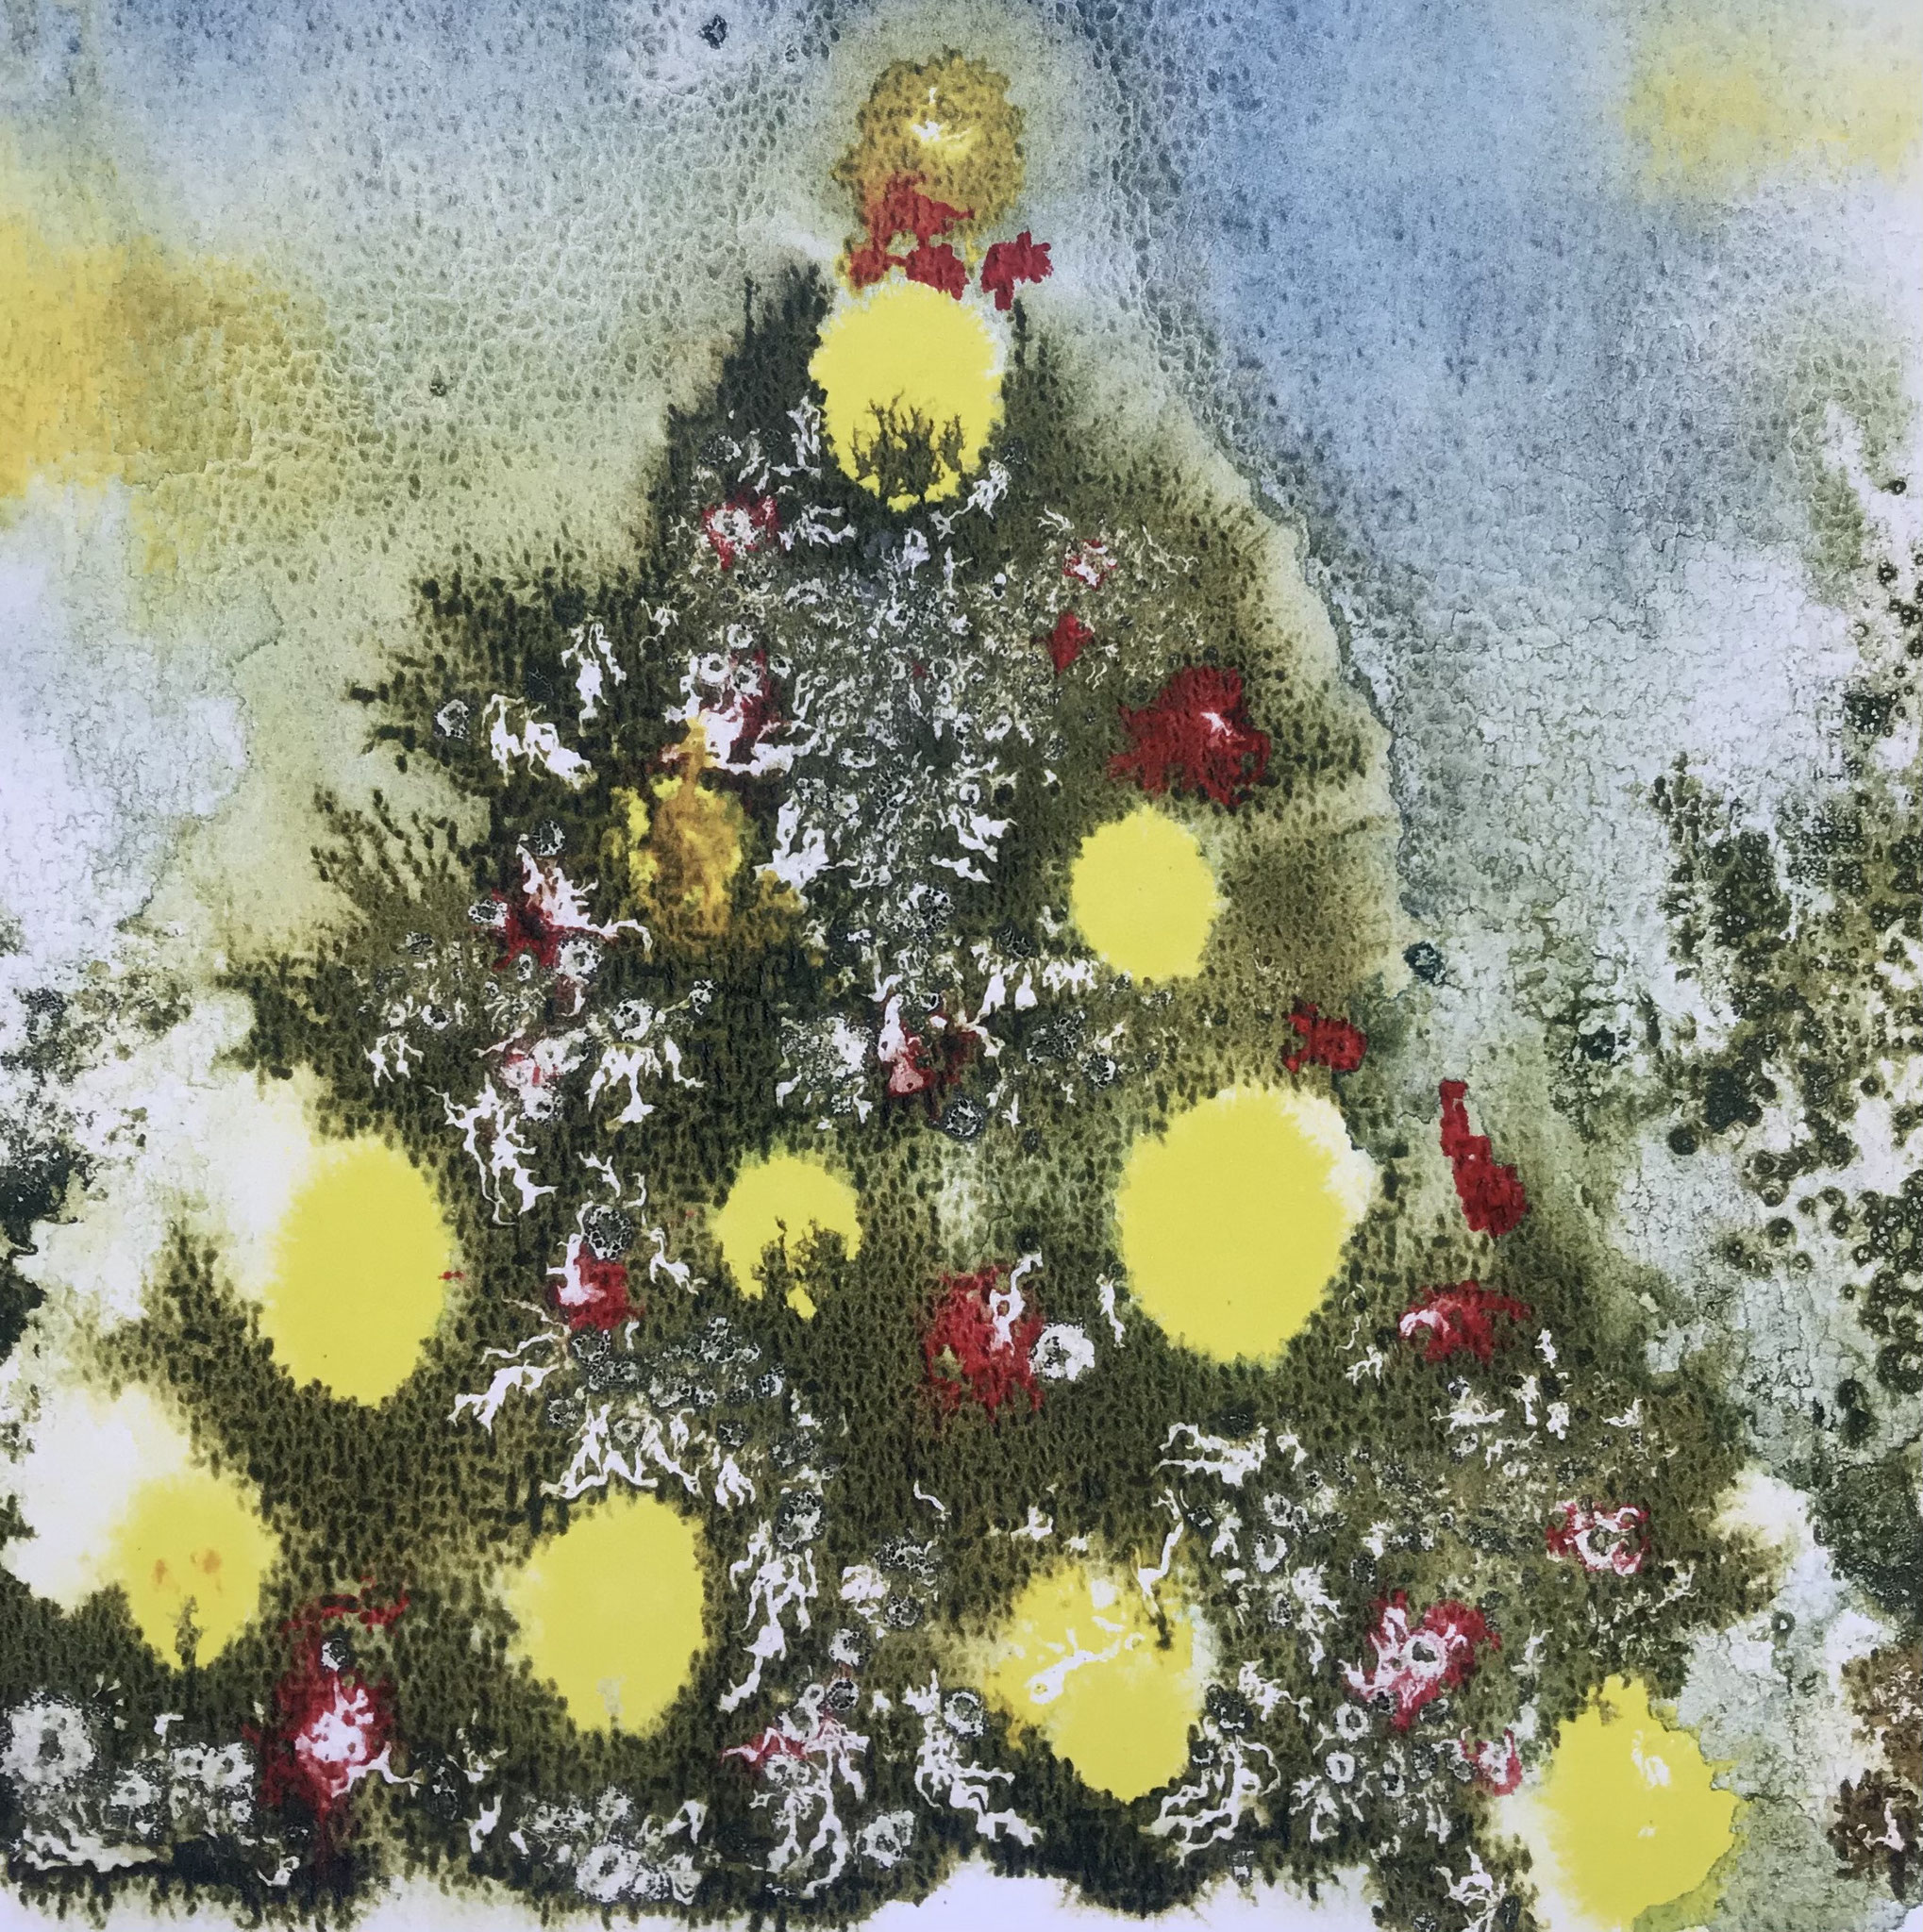 11.12. - "Weihnachtsbaum gefällig?" - Als überdauerndes Aquarell-Original zu haben von und bei Monika Waterstrat, Berlin